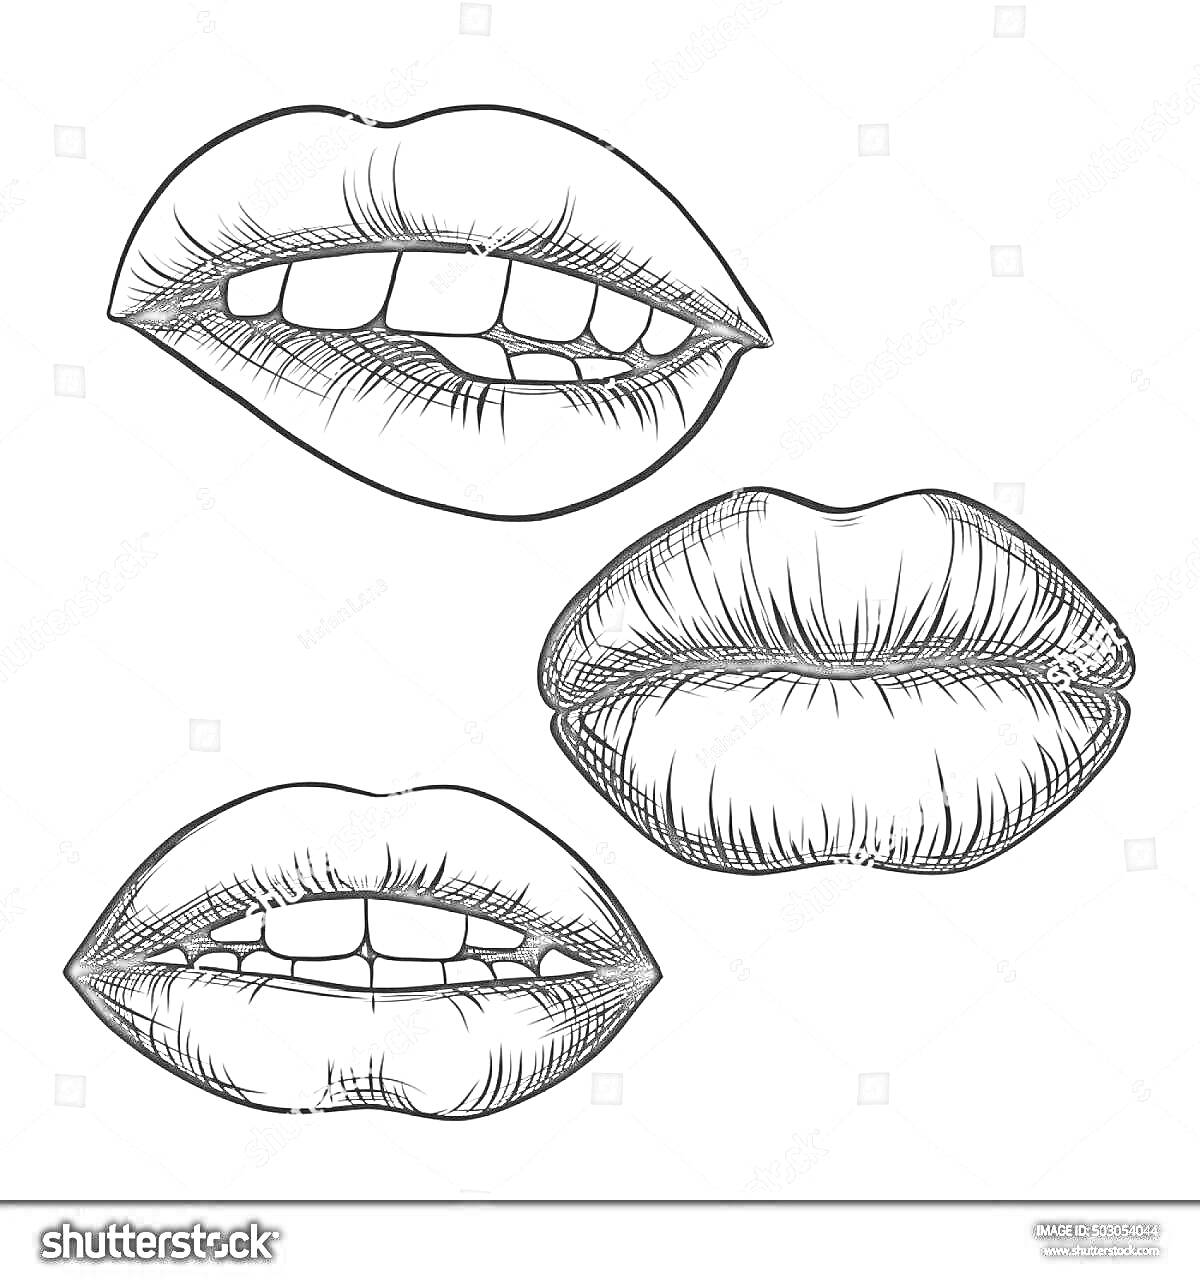 Раскраска Три пары губ с разными выражениями: приоткрытые губы с видимыми зубами (верхняя и левая пары), сжатые губы (правая пара)